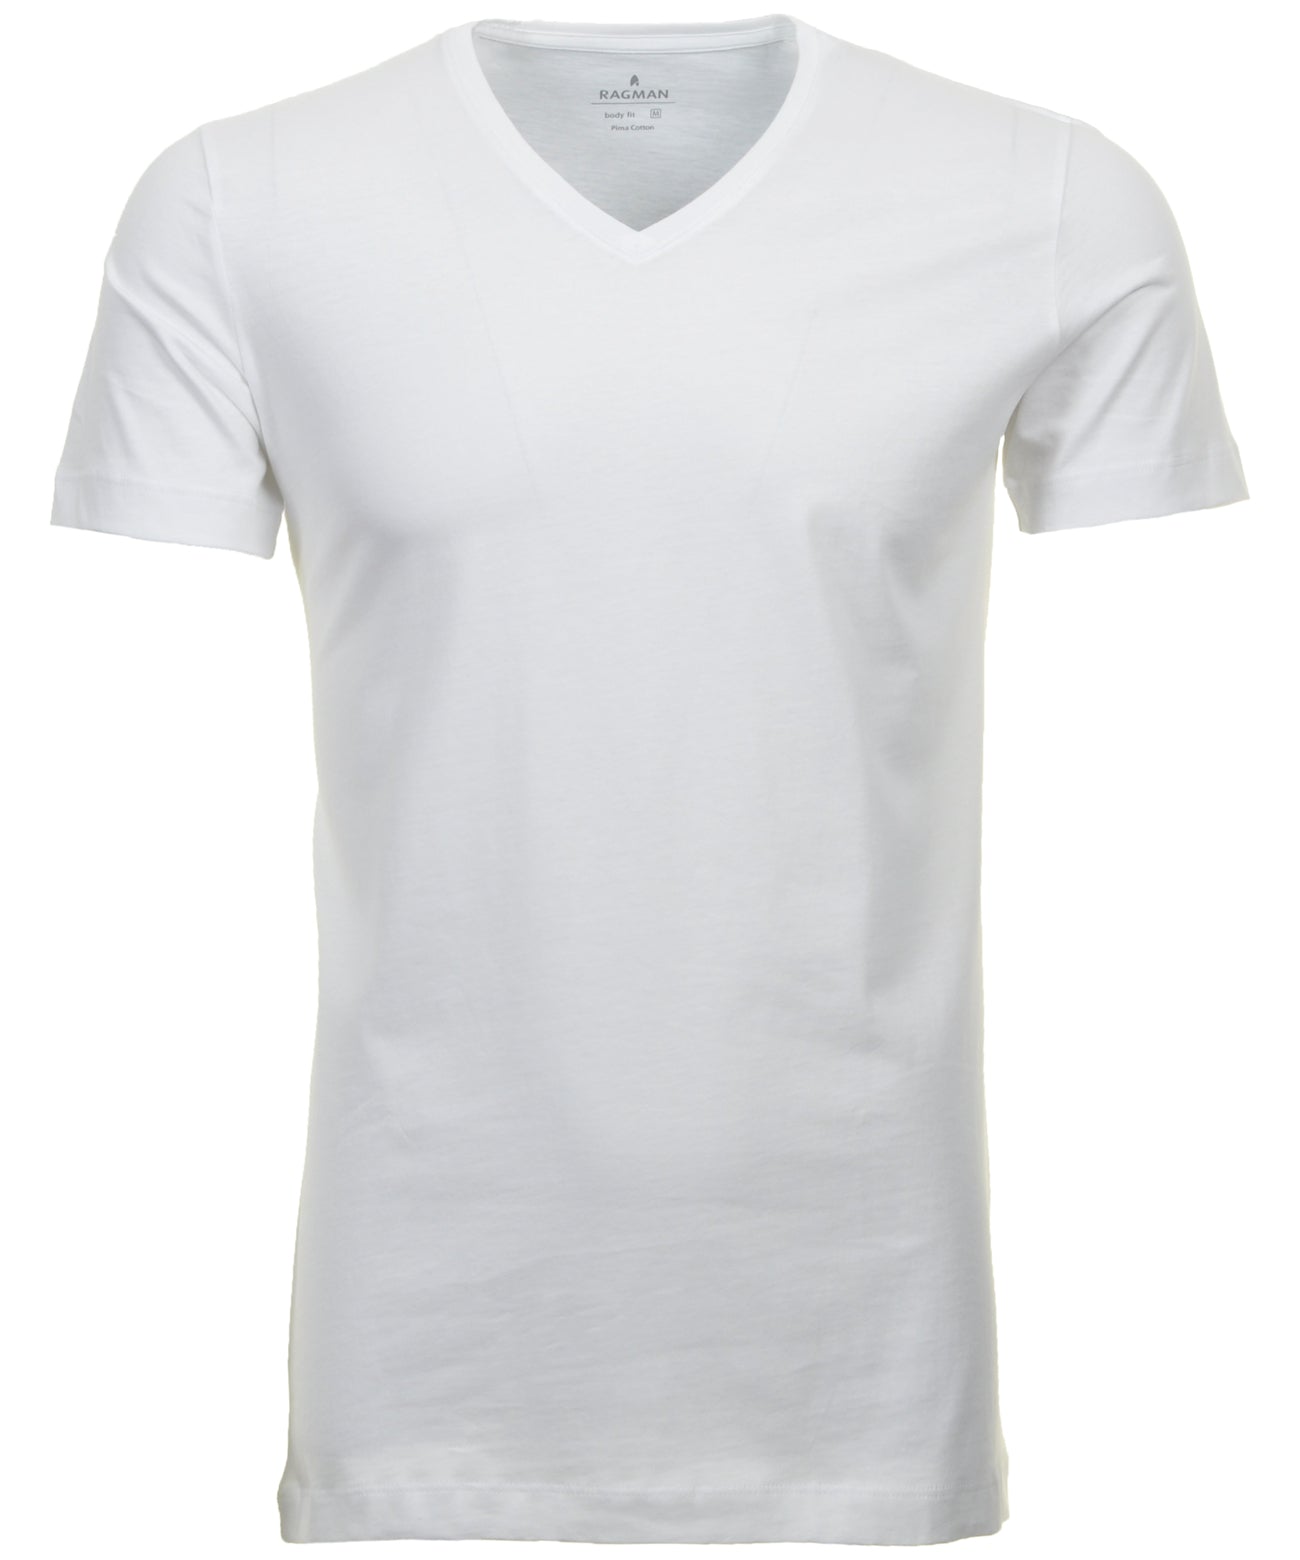 2 T-Shirt Doppelpack Bodyfit mit V-Ausschnitt (Weiss)